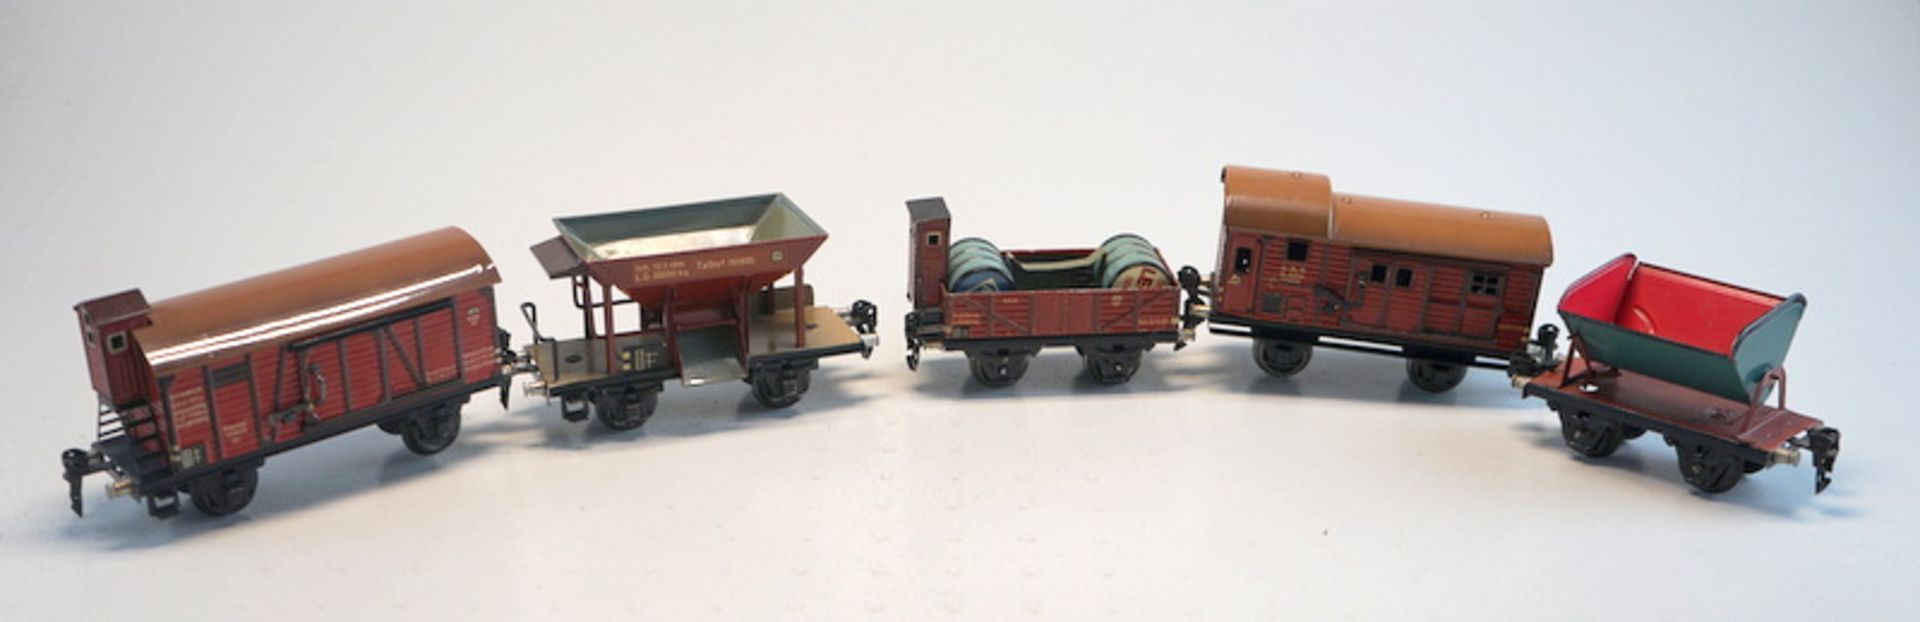 Märklin 1929ff, Gebr. Märklin & Cie., G.m.b.H. Göppingen: Sammlung 5 märklin-Güterwagen, Spur 0